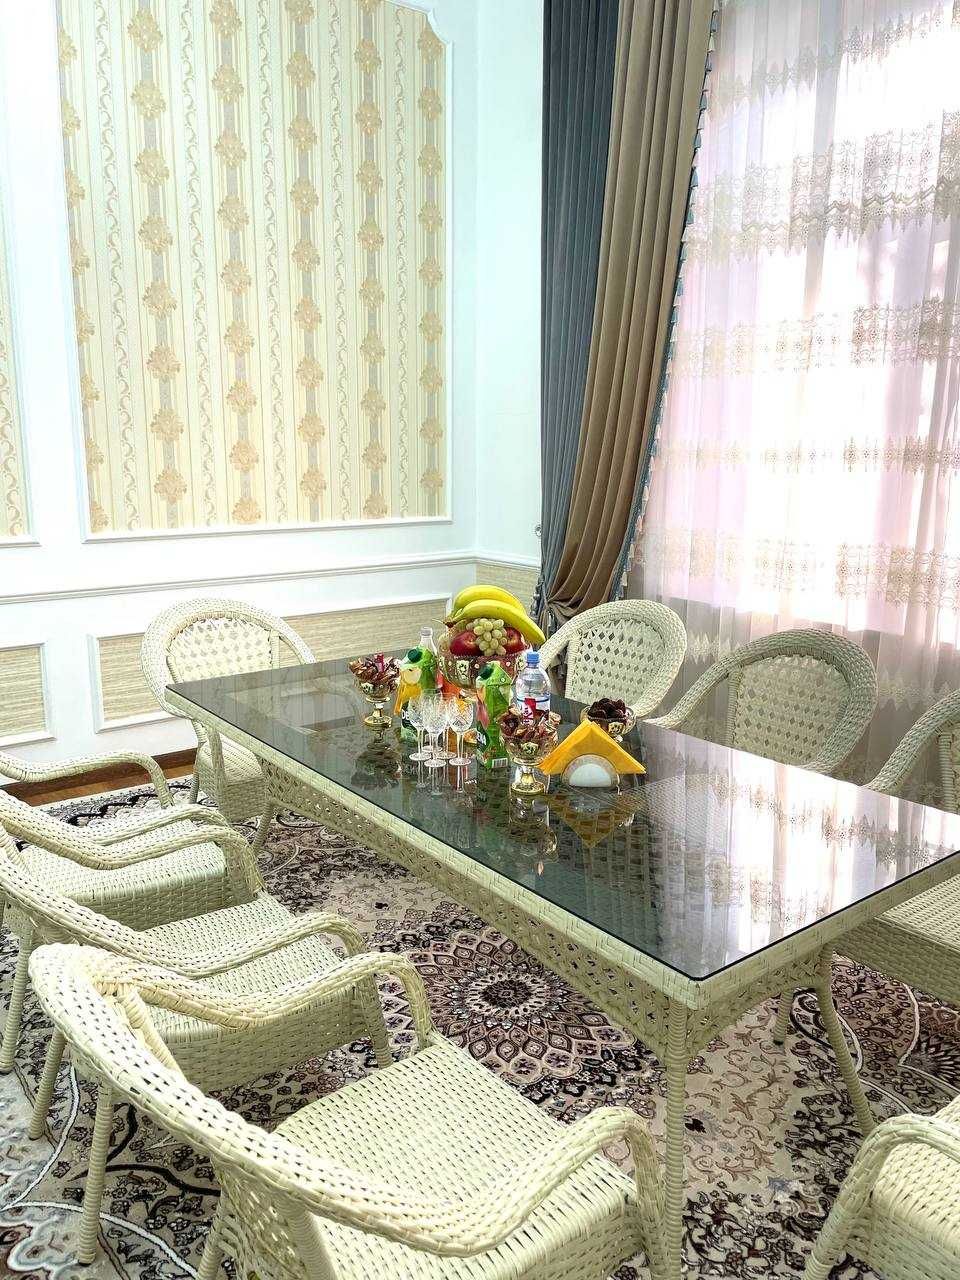 Комплект ротанговой мебели садовая мебель сауна или в баню